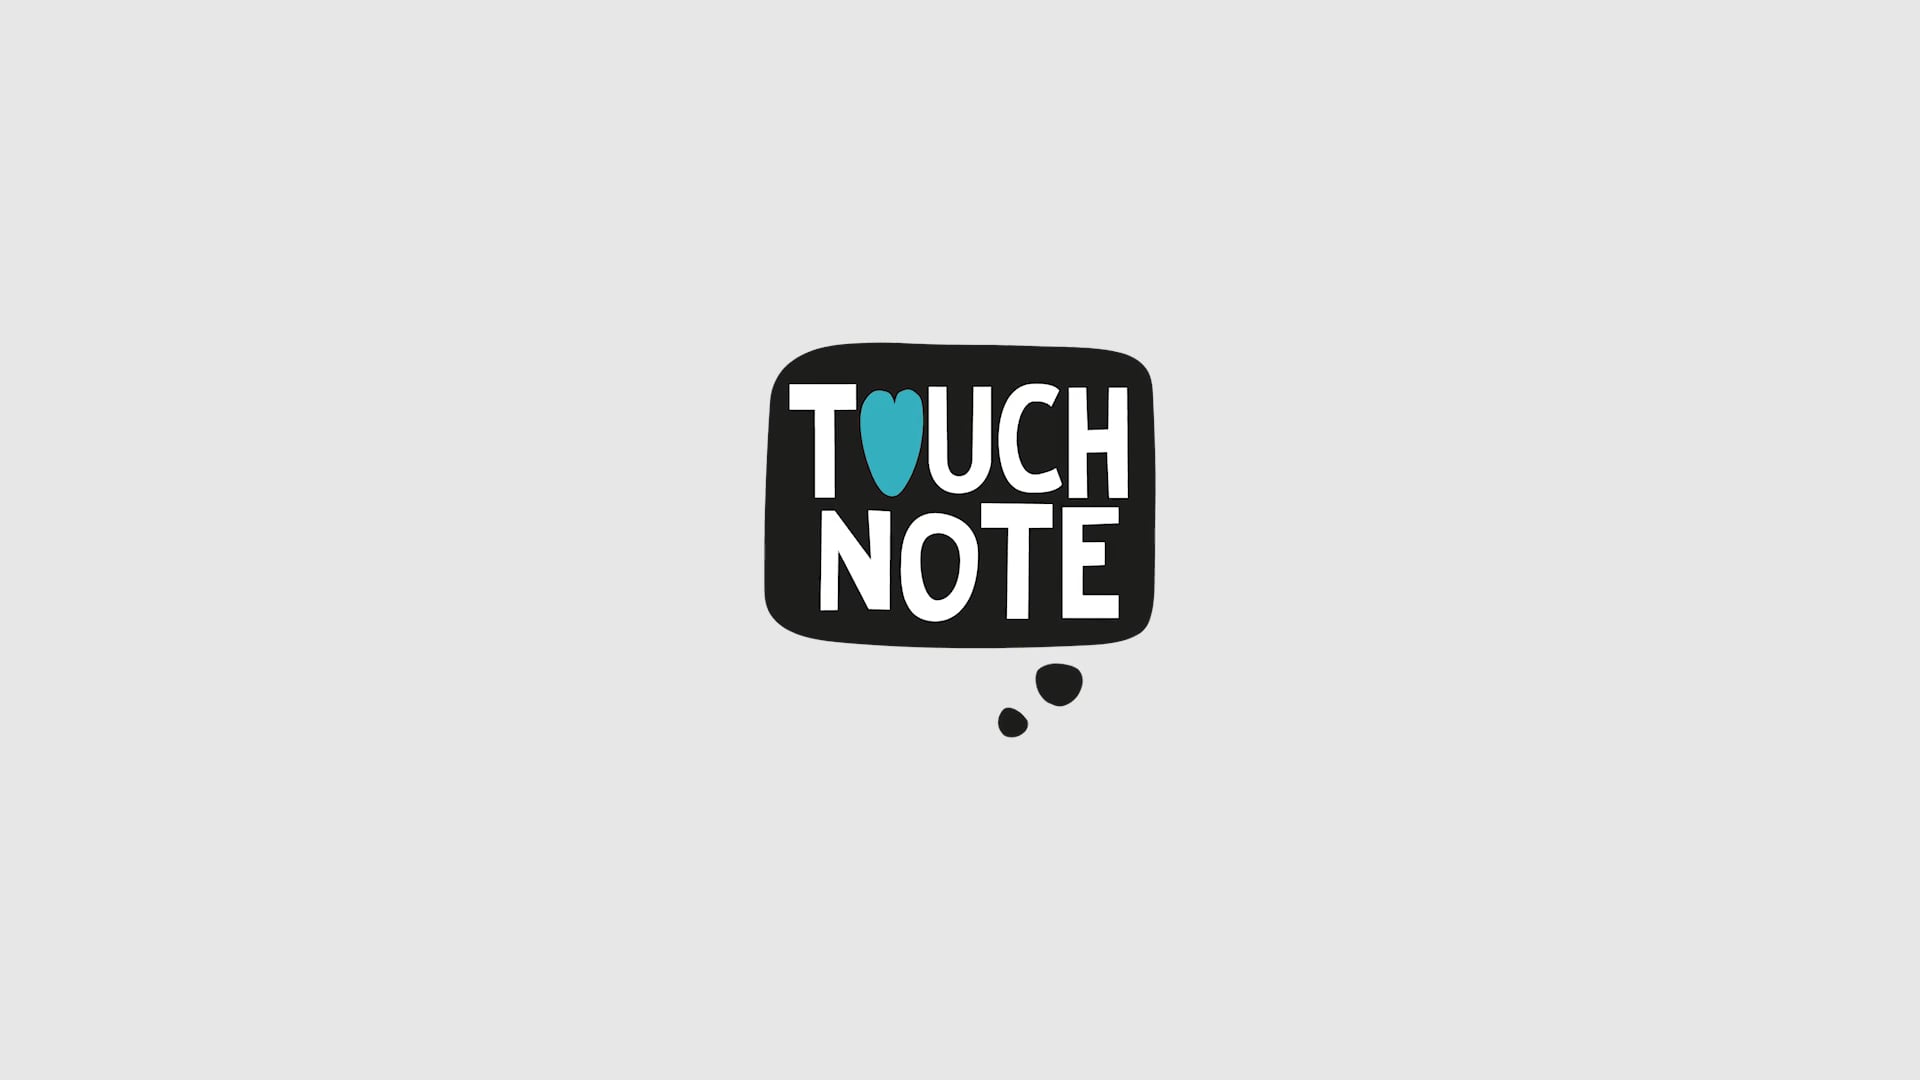 TOUCHNOTE // director + camera + editor